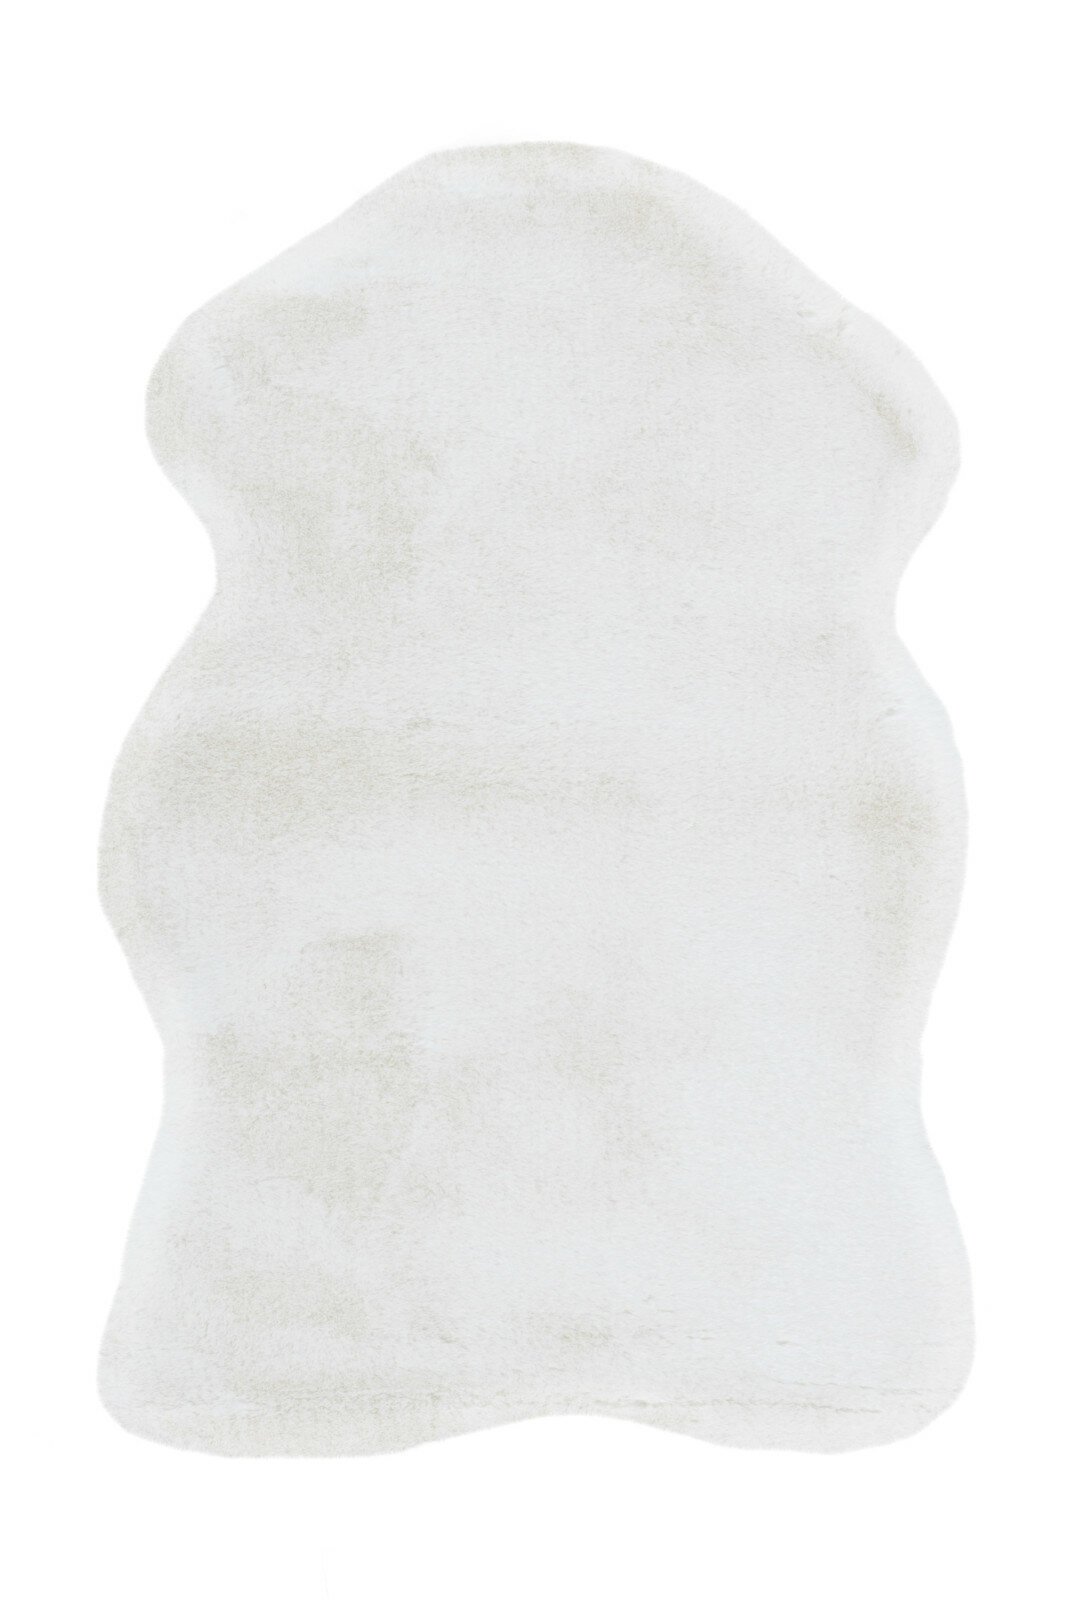 Kunstfell - Kaninchenfell-Haptik - weiß - 60x90 cm | Online bei ROLLER  kaufen